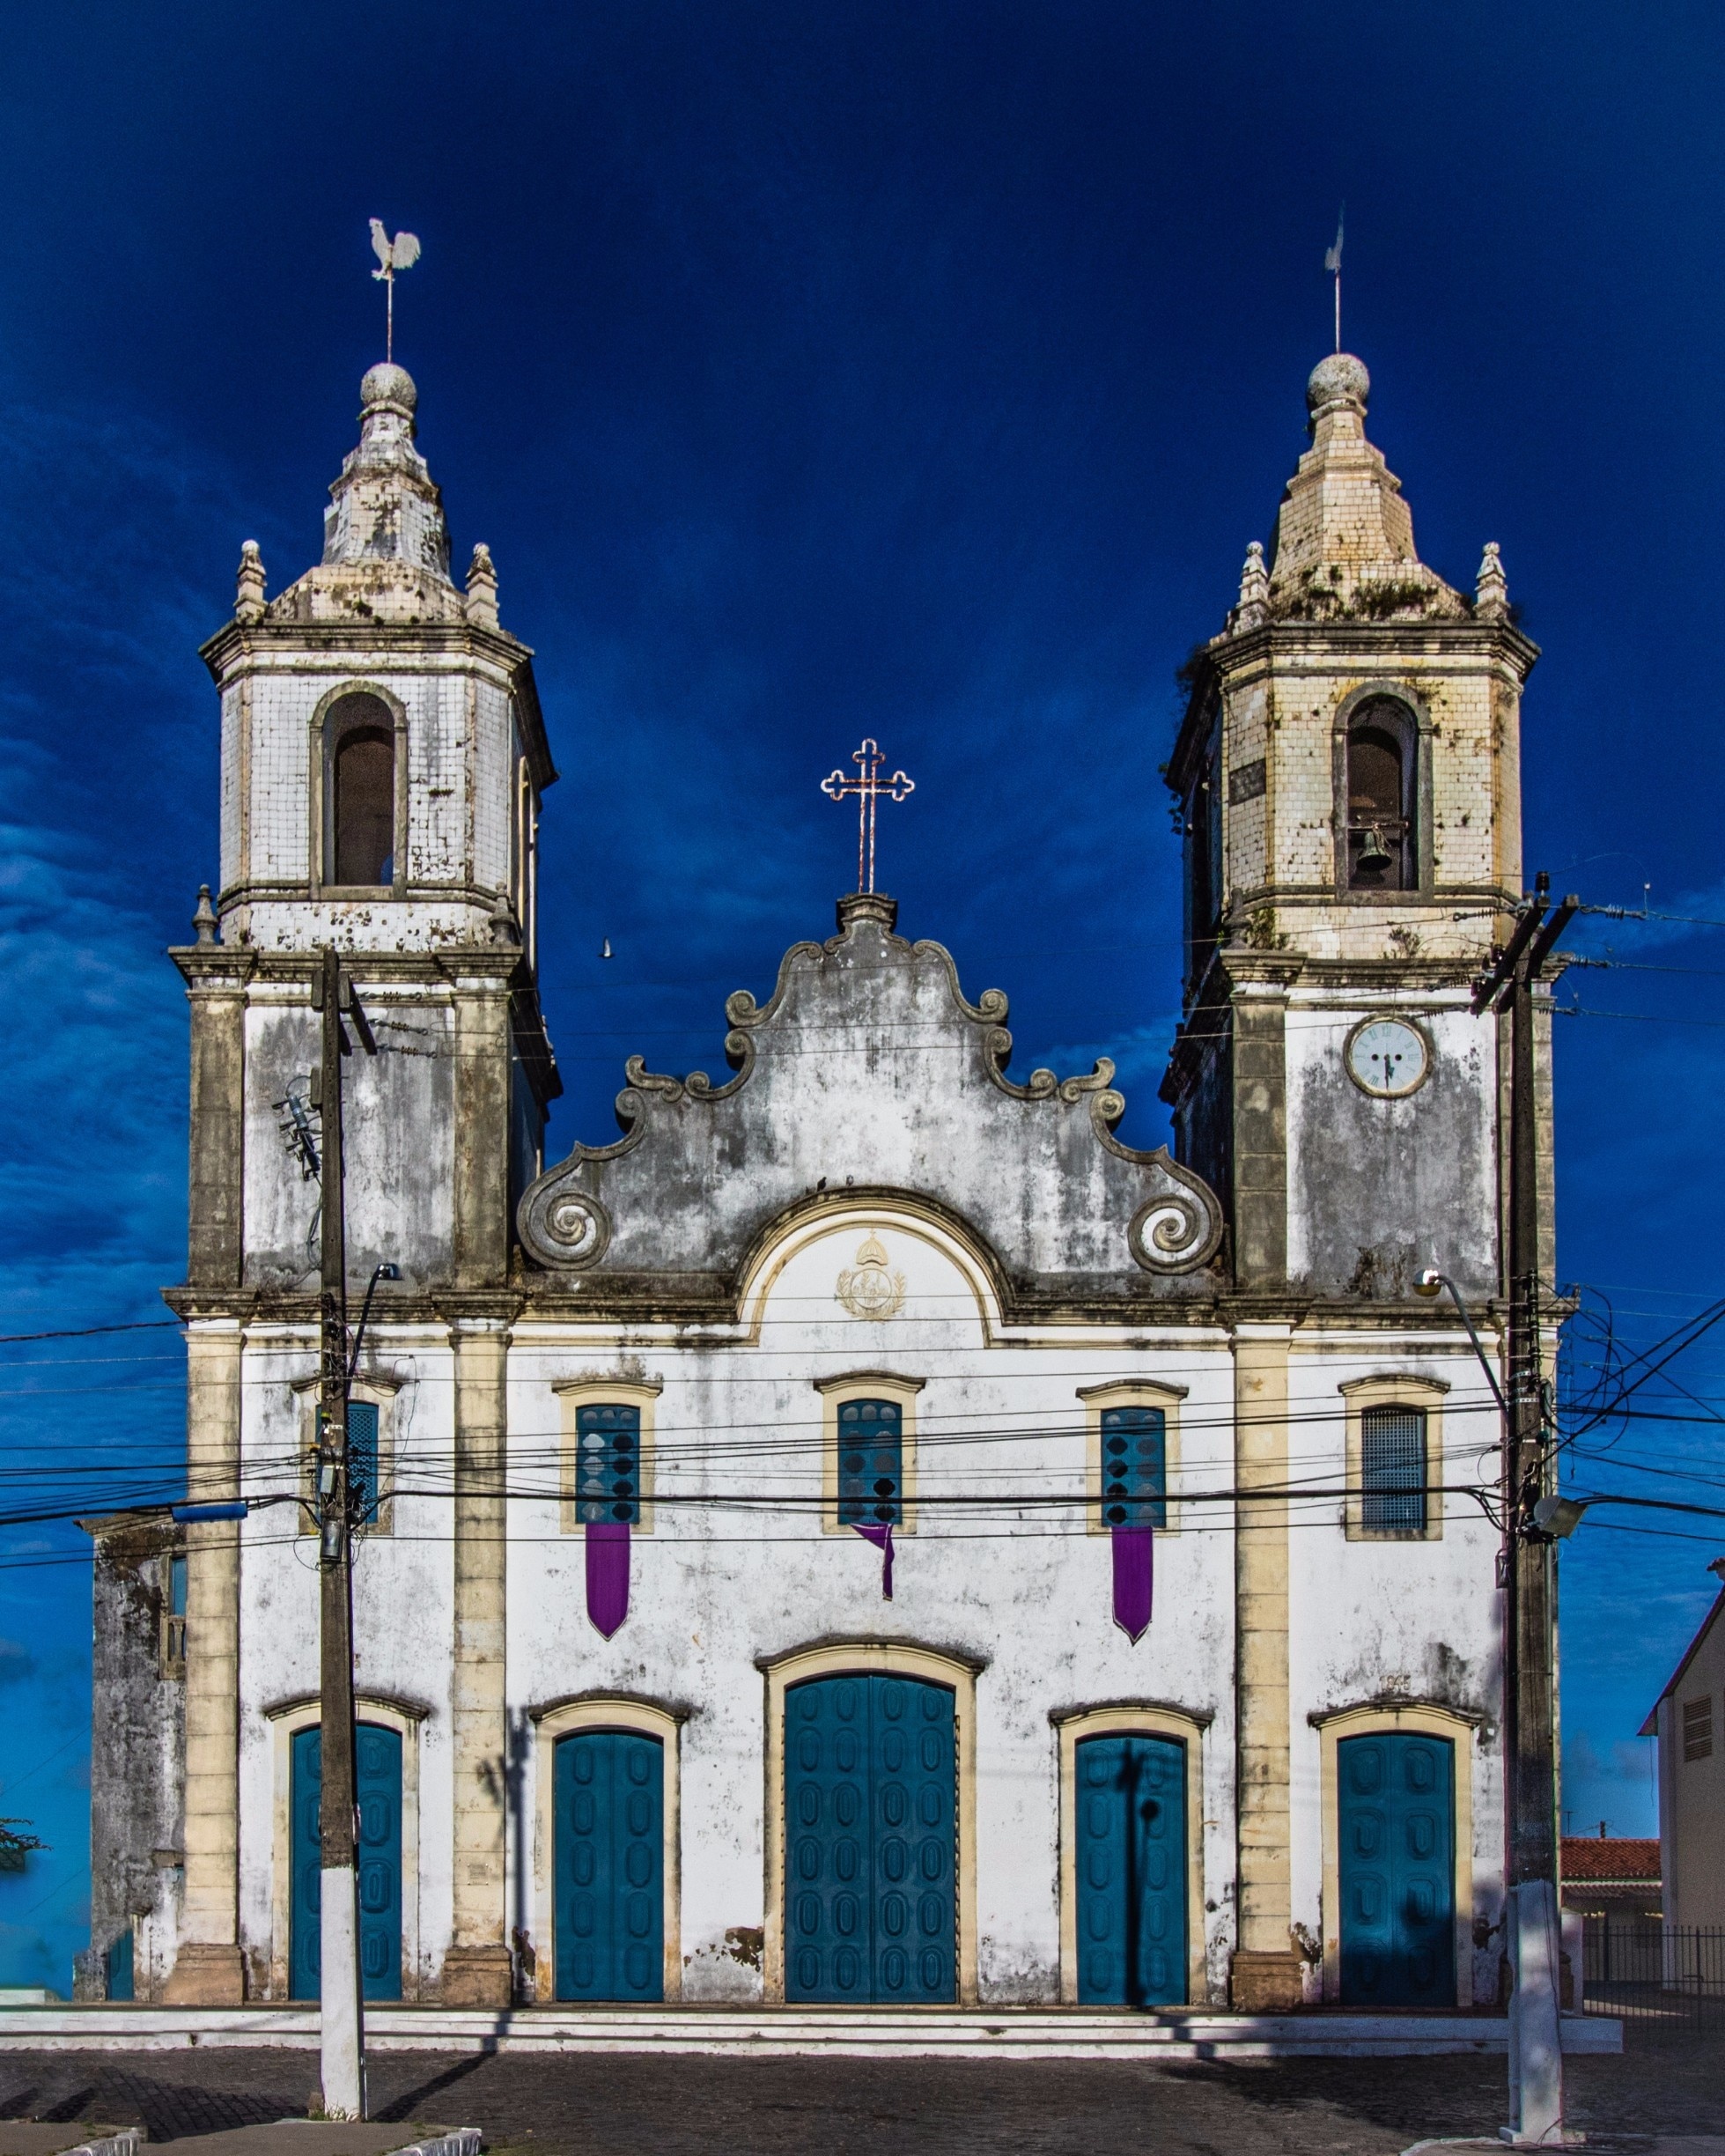 Igreja Matriz de Nossa Senhora das Vitórias (Parish Church of Our Lady of Victory), São Cristóvão, Sergipe. Built in 1617 and altered continuously until the 19th century. #BVStrove